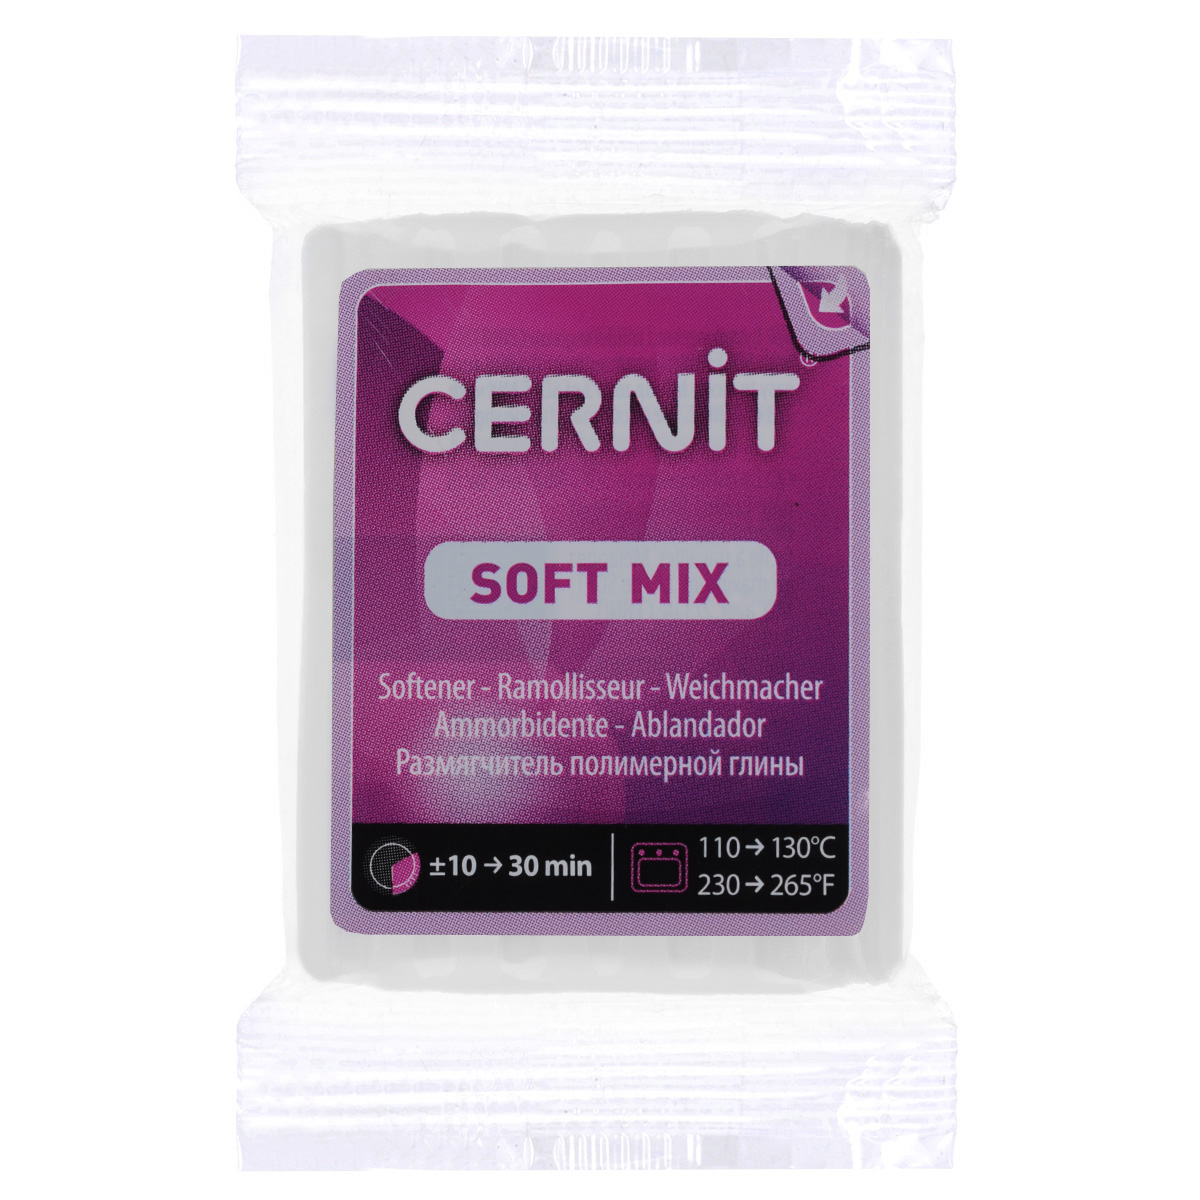 Размягчитель для полимерной глины Cernit 